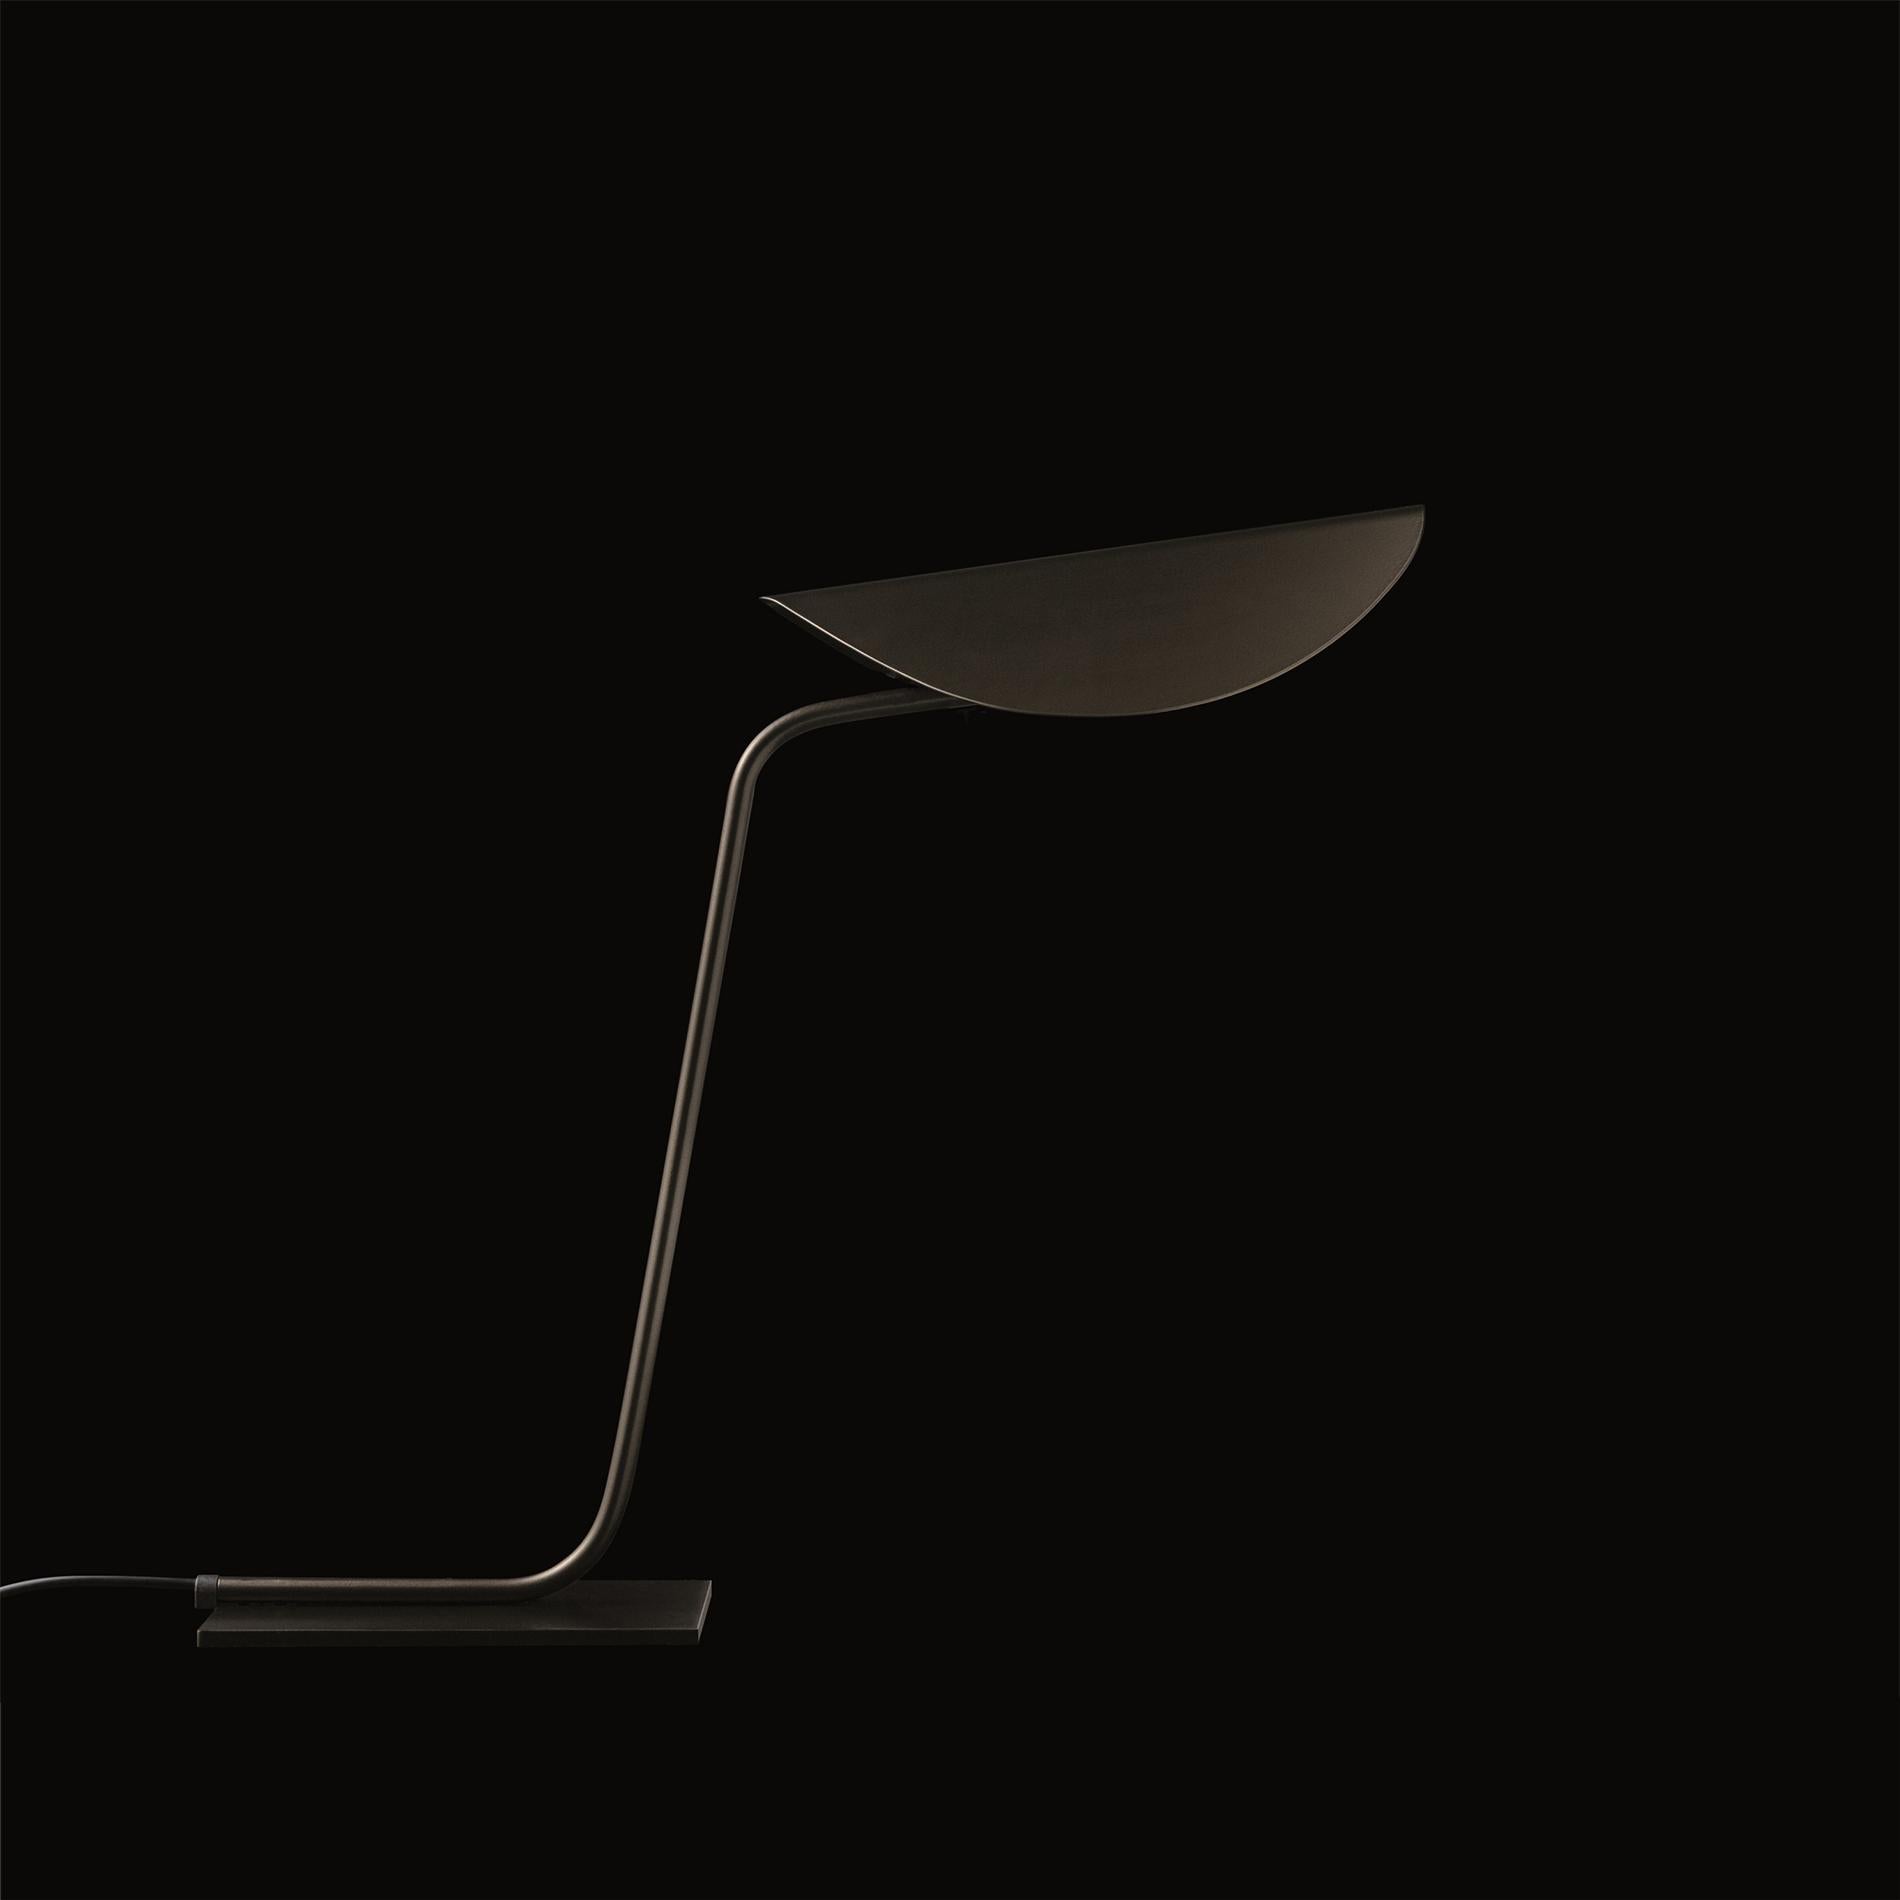 Lampe à poser 'Plume' créée par Christophe Pillet en 2017.
Lampe de table à lumière indirecte en métal laqué. Structure en forme de tube en métal incurvé.
Fabriqué par Oluce, Italie.

Plume, conçu par Christophe Pillet, une famille de lampes